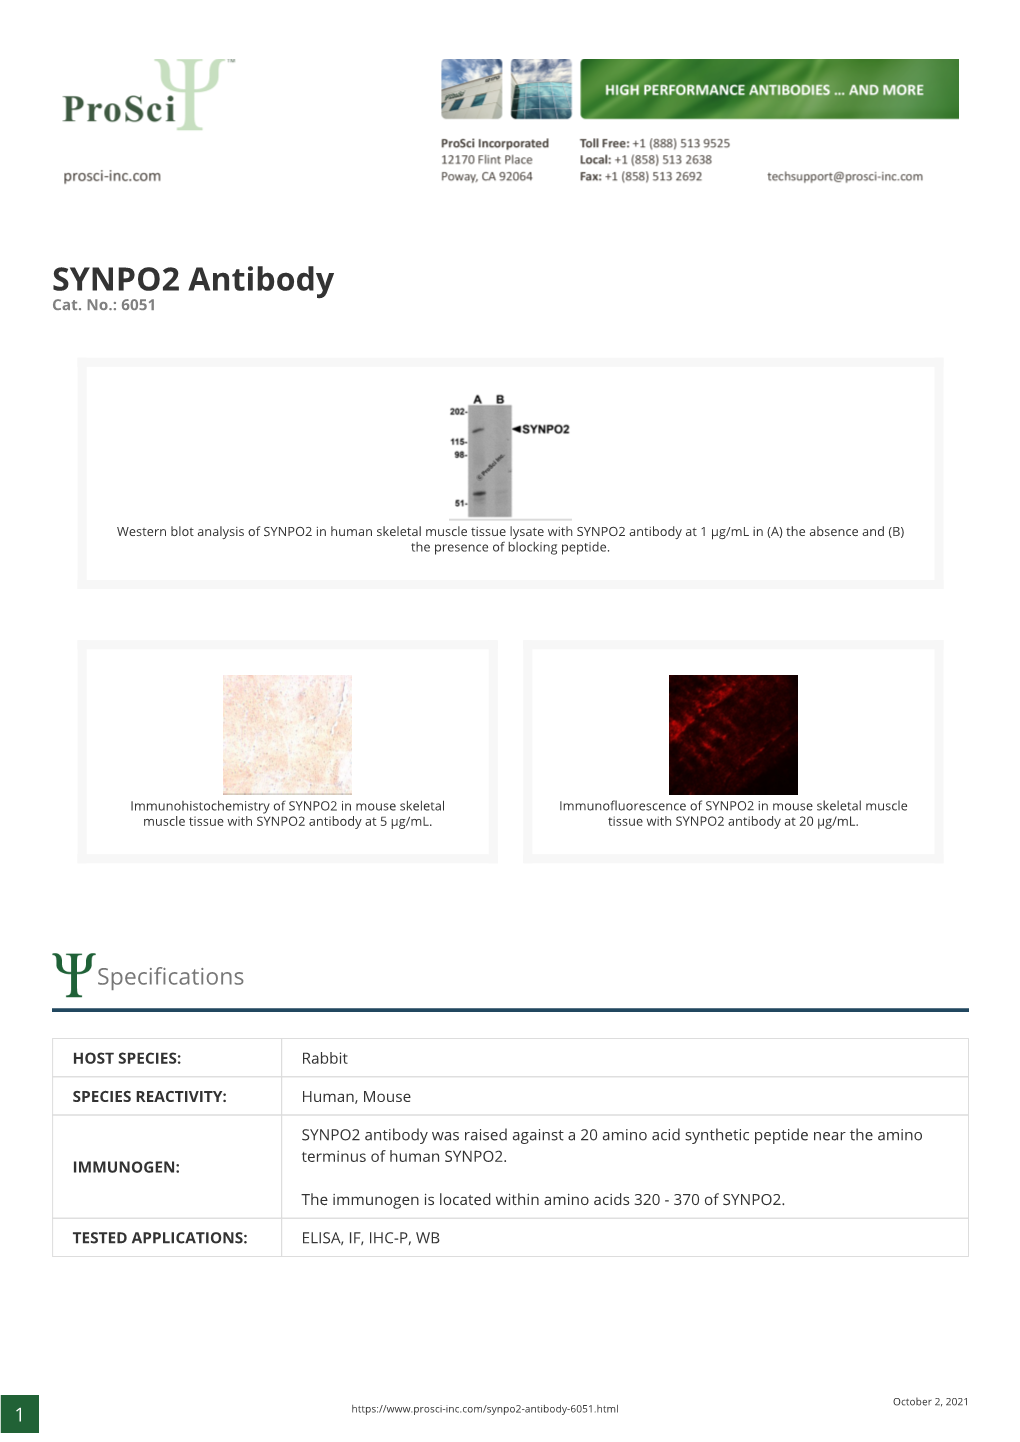 SYNPO2 Antibody Cat